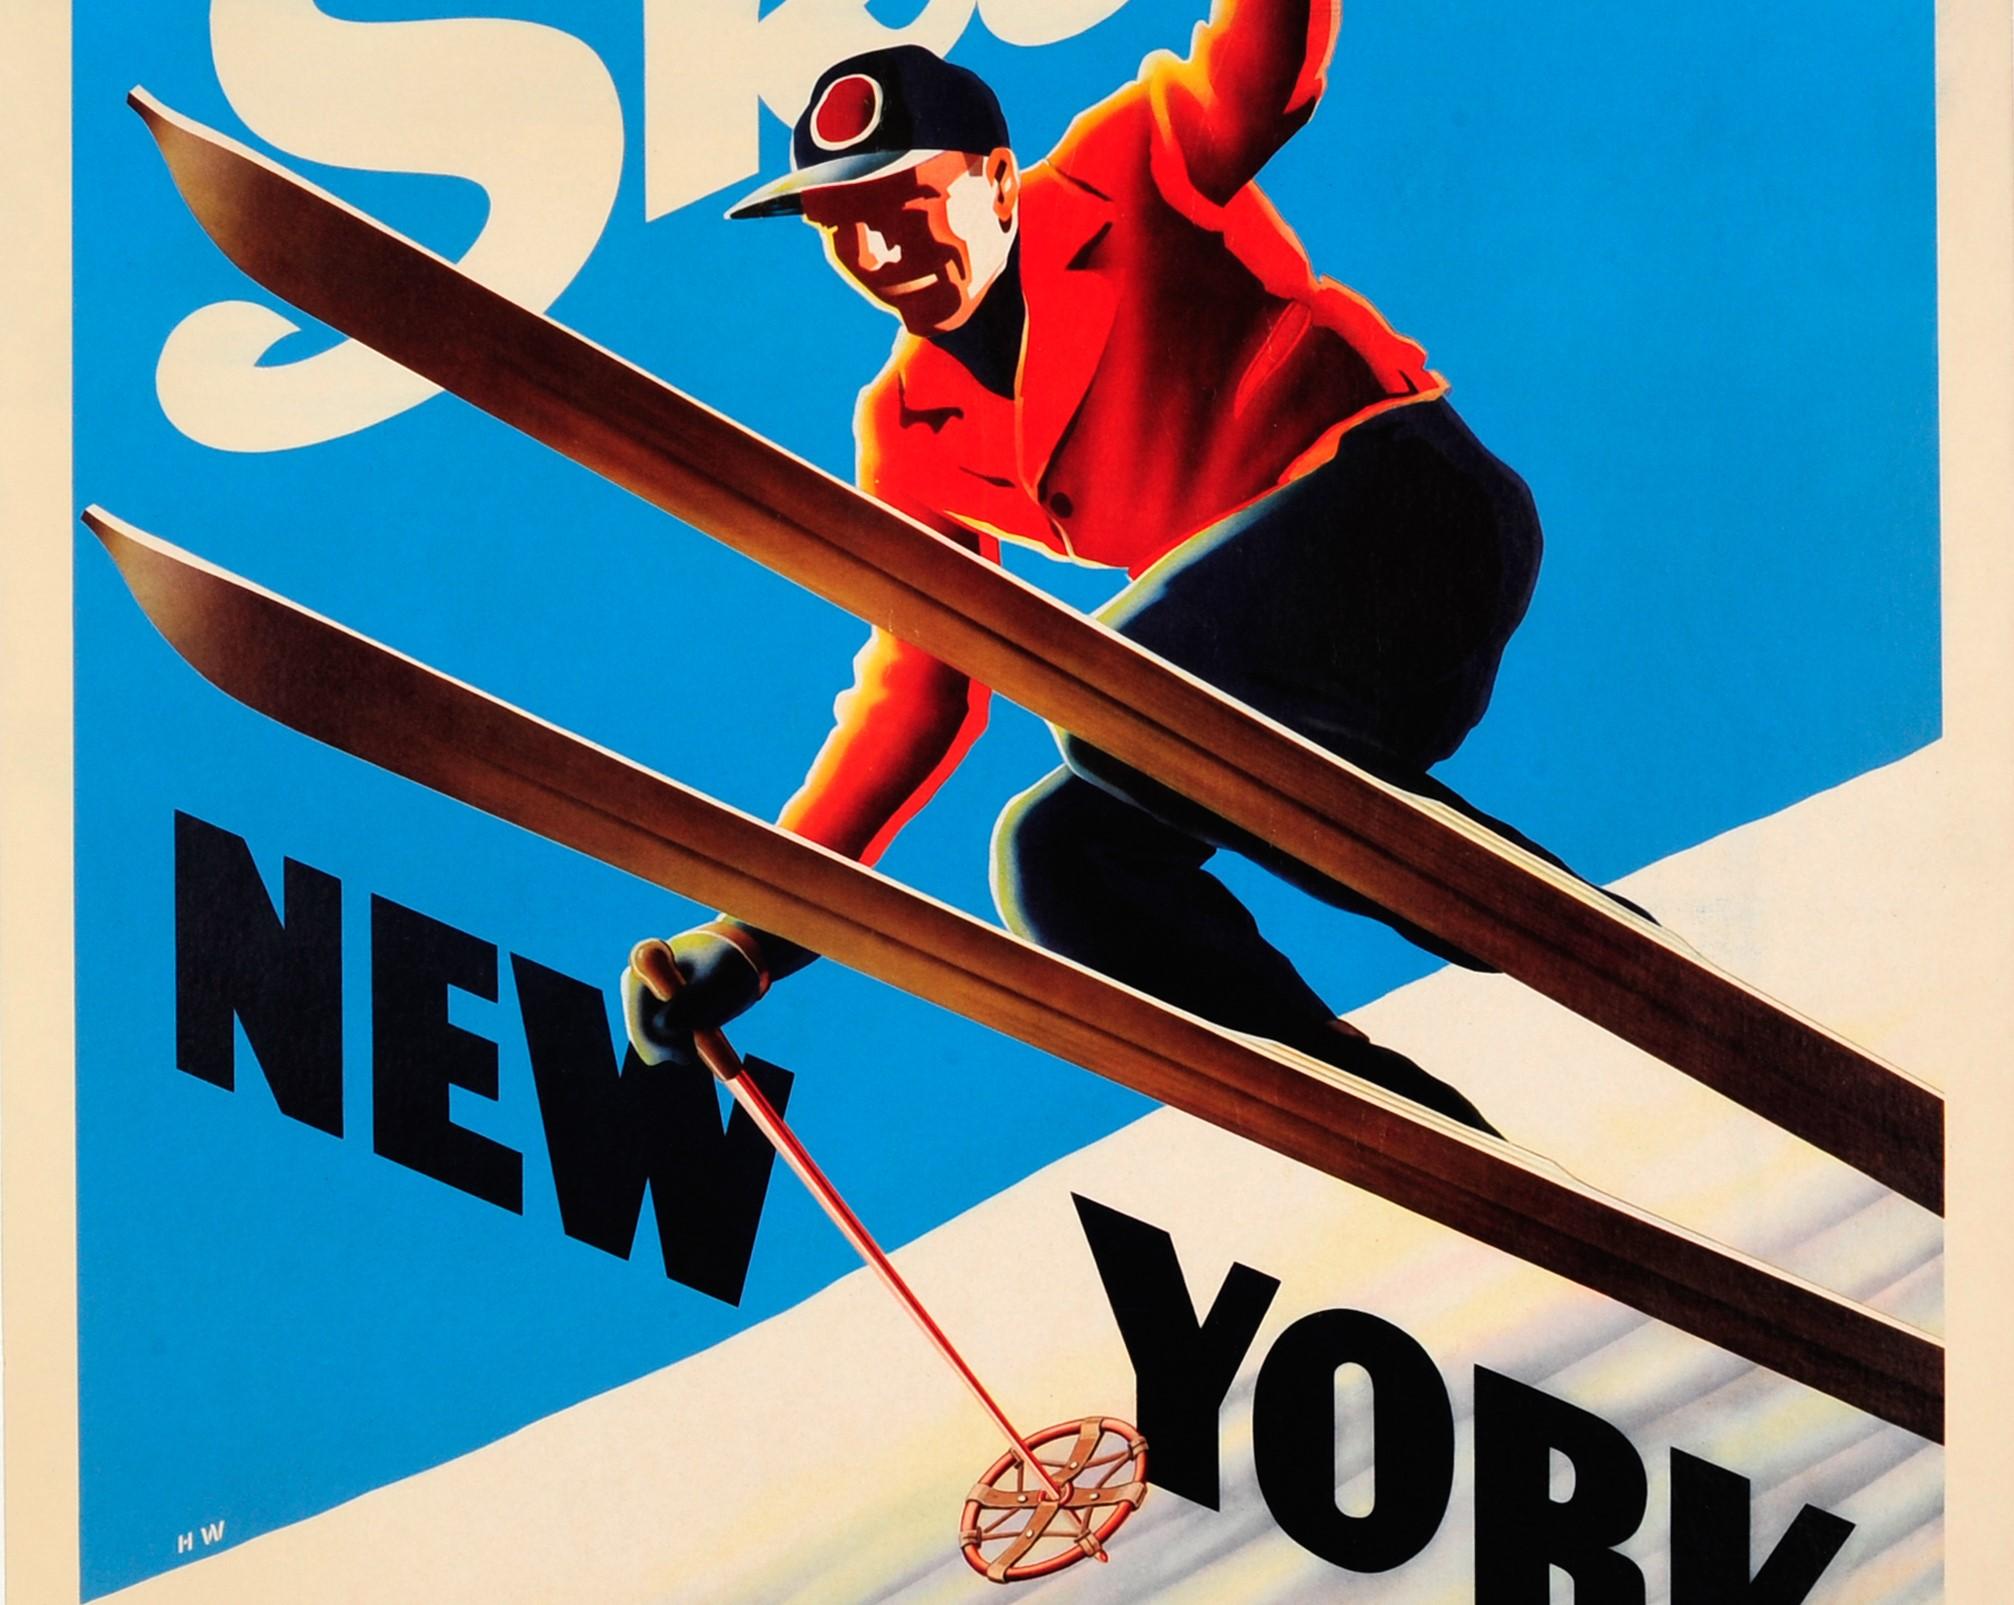 Original Vintage-Skiplakat, Ski, New York, Ft. Skier mit freundlicher Genehmigung des Bundesstaates New York (Art déco), Print, von H.W.